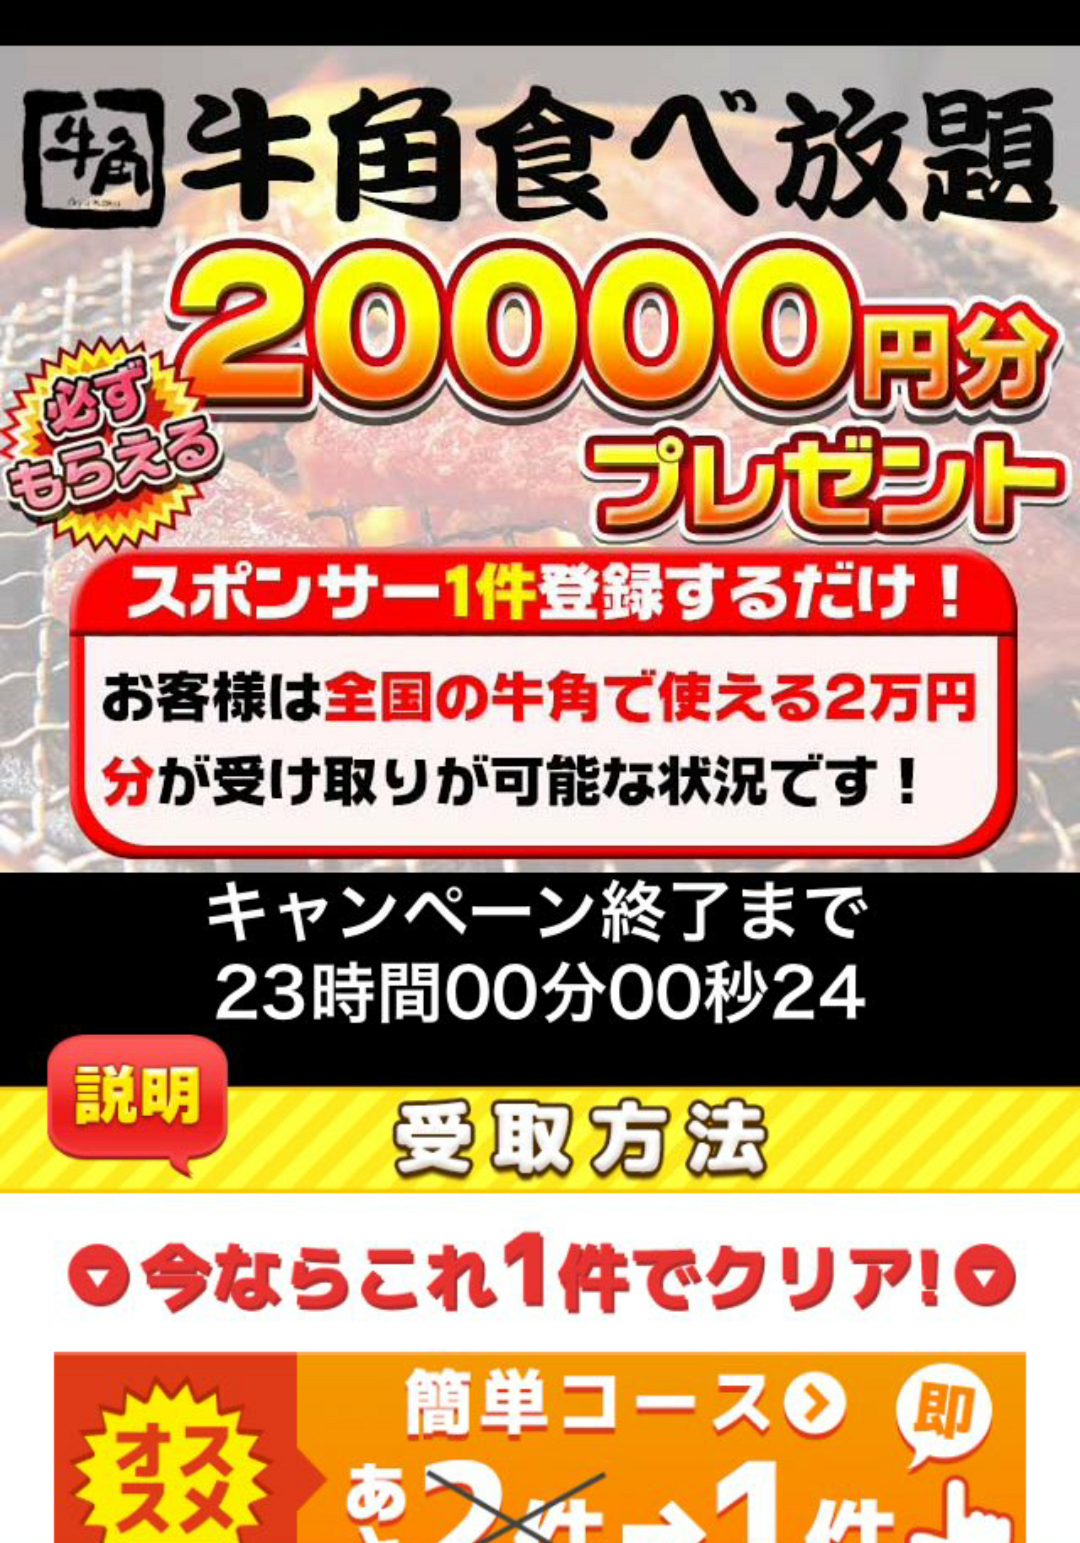 キラキラウォーカーの牛角食べ放題 000円分スクラッチについて 日本ポイントサイト情報 Pointjp